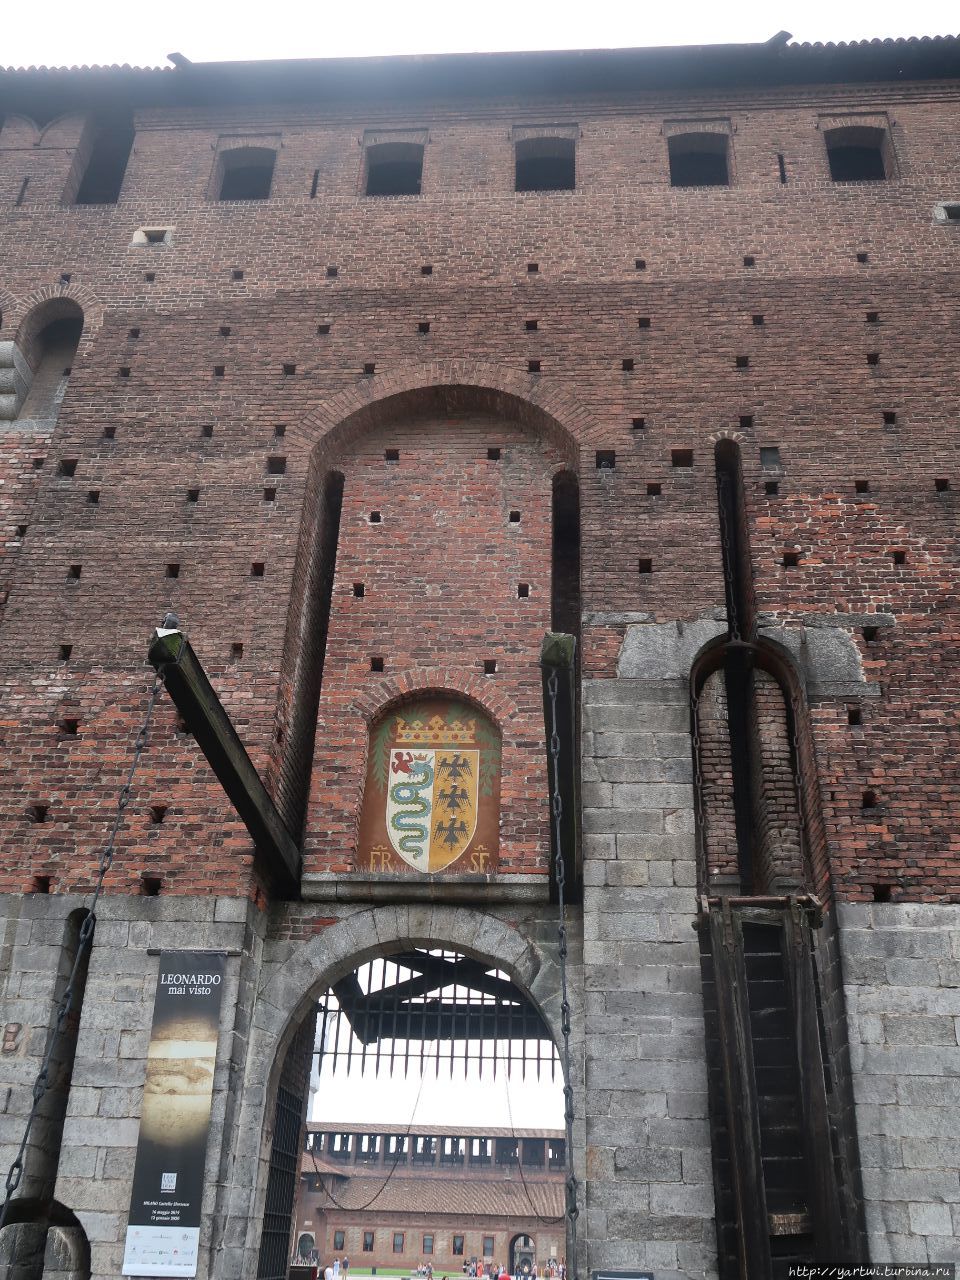 Замок Сфорца (Castello Sforzesco) — один из самых знаменитых замков Италии расположен в самом сердце Милана и, будучи неразрывно связан, символизирует собой всю многовековую историю города.
Замок то отстраивался, то находился под угрозой разрушения. Милан, Италия